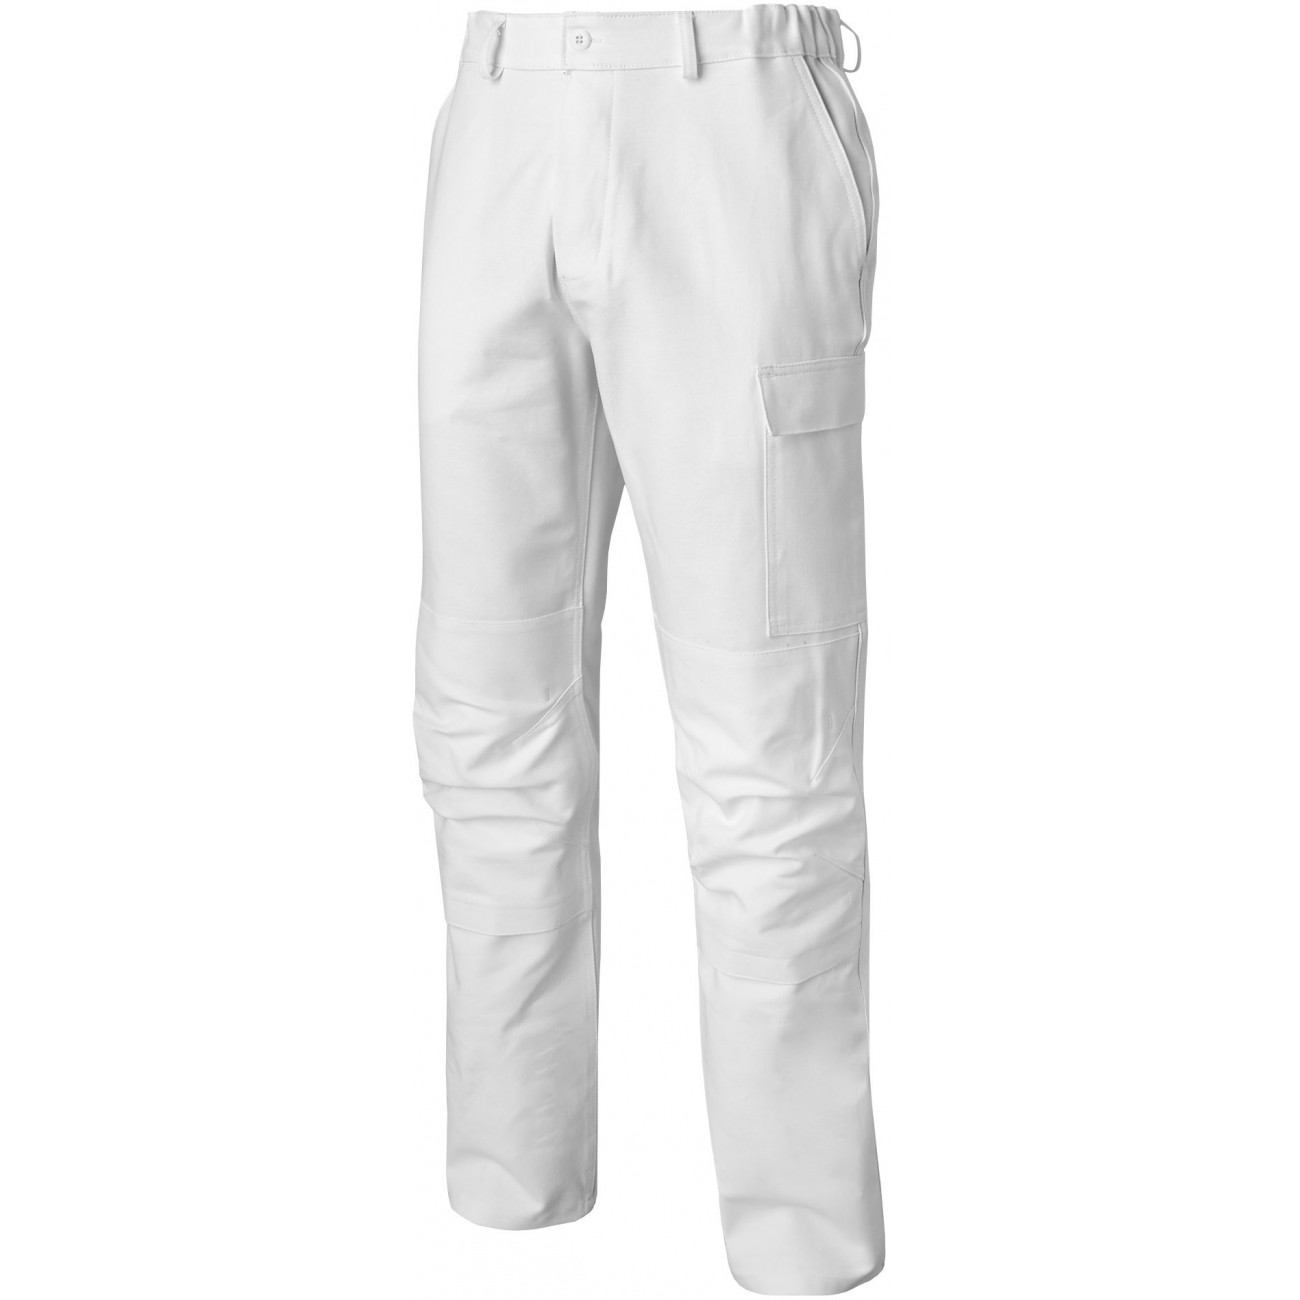 Pantalon de peintre et ravaleur 100% coton blanc